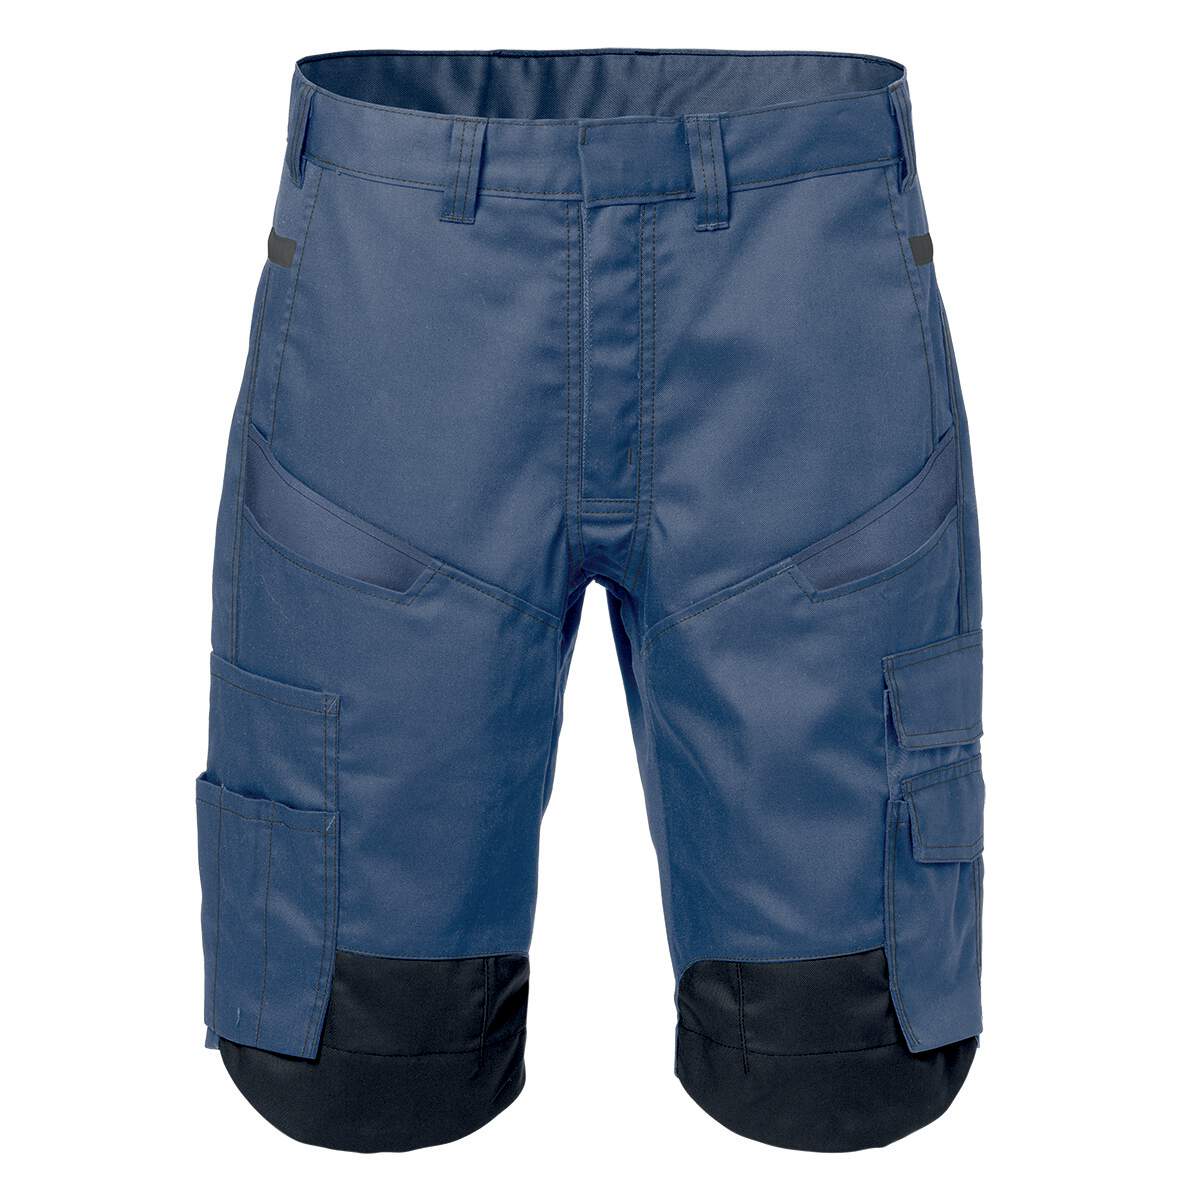 1254806 - Shorts blau Gr.44 FUSION 2562